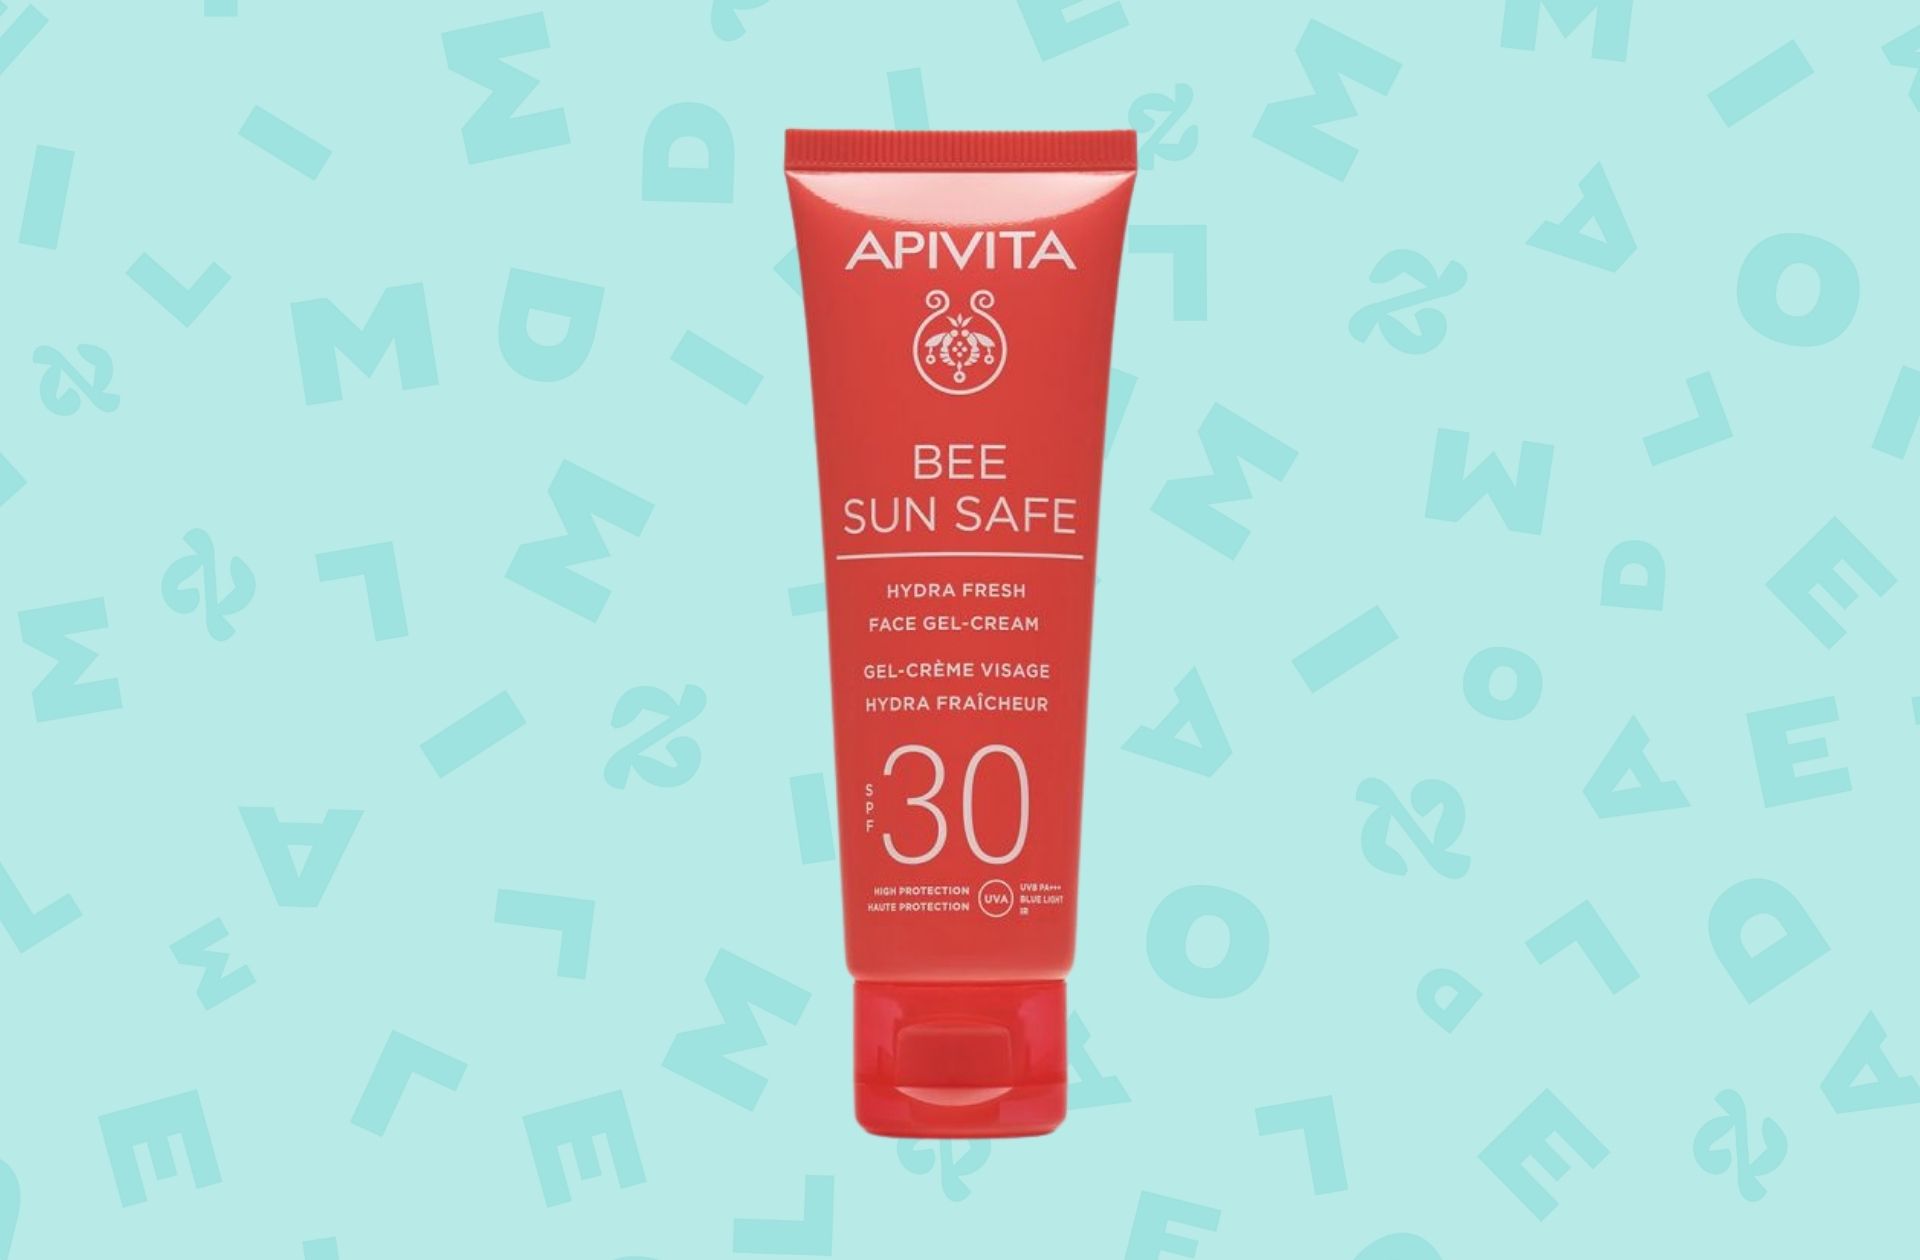 Gel crème visage hydra-fraîcheur Bee Sun Safe SPF30 — Apivita